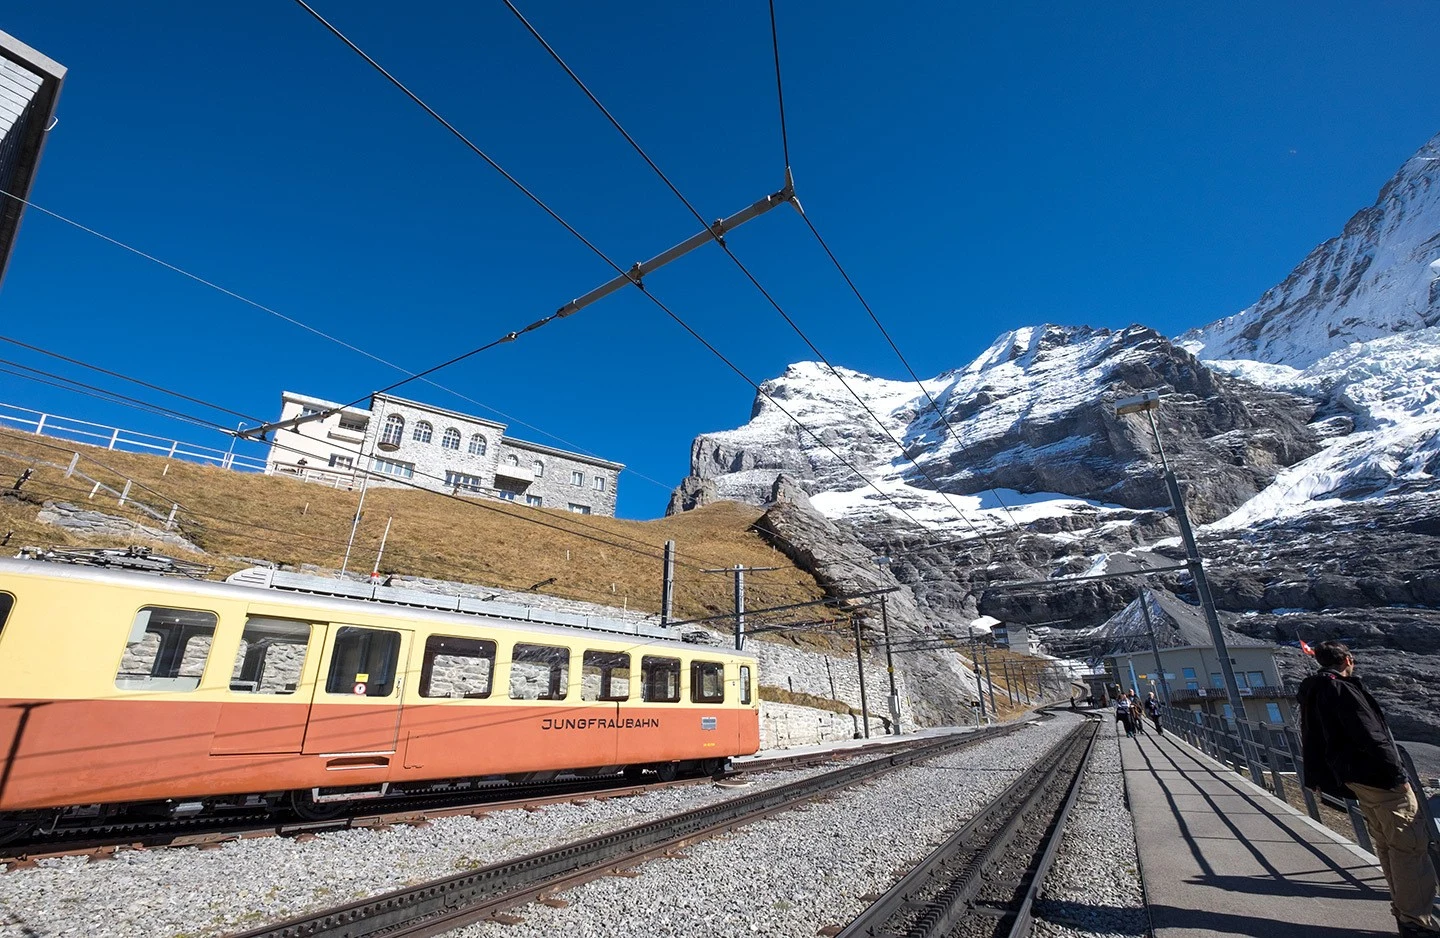 The Jungfraubahn scenic train in Switzerland